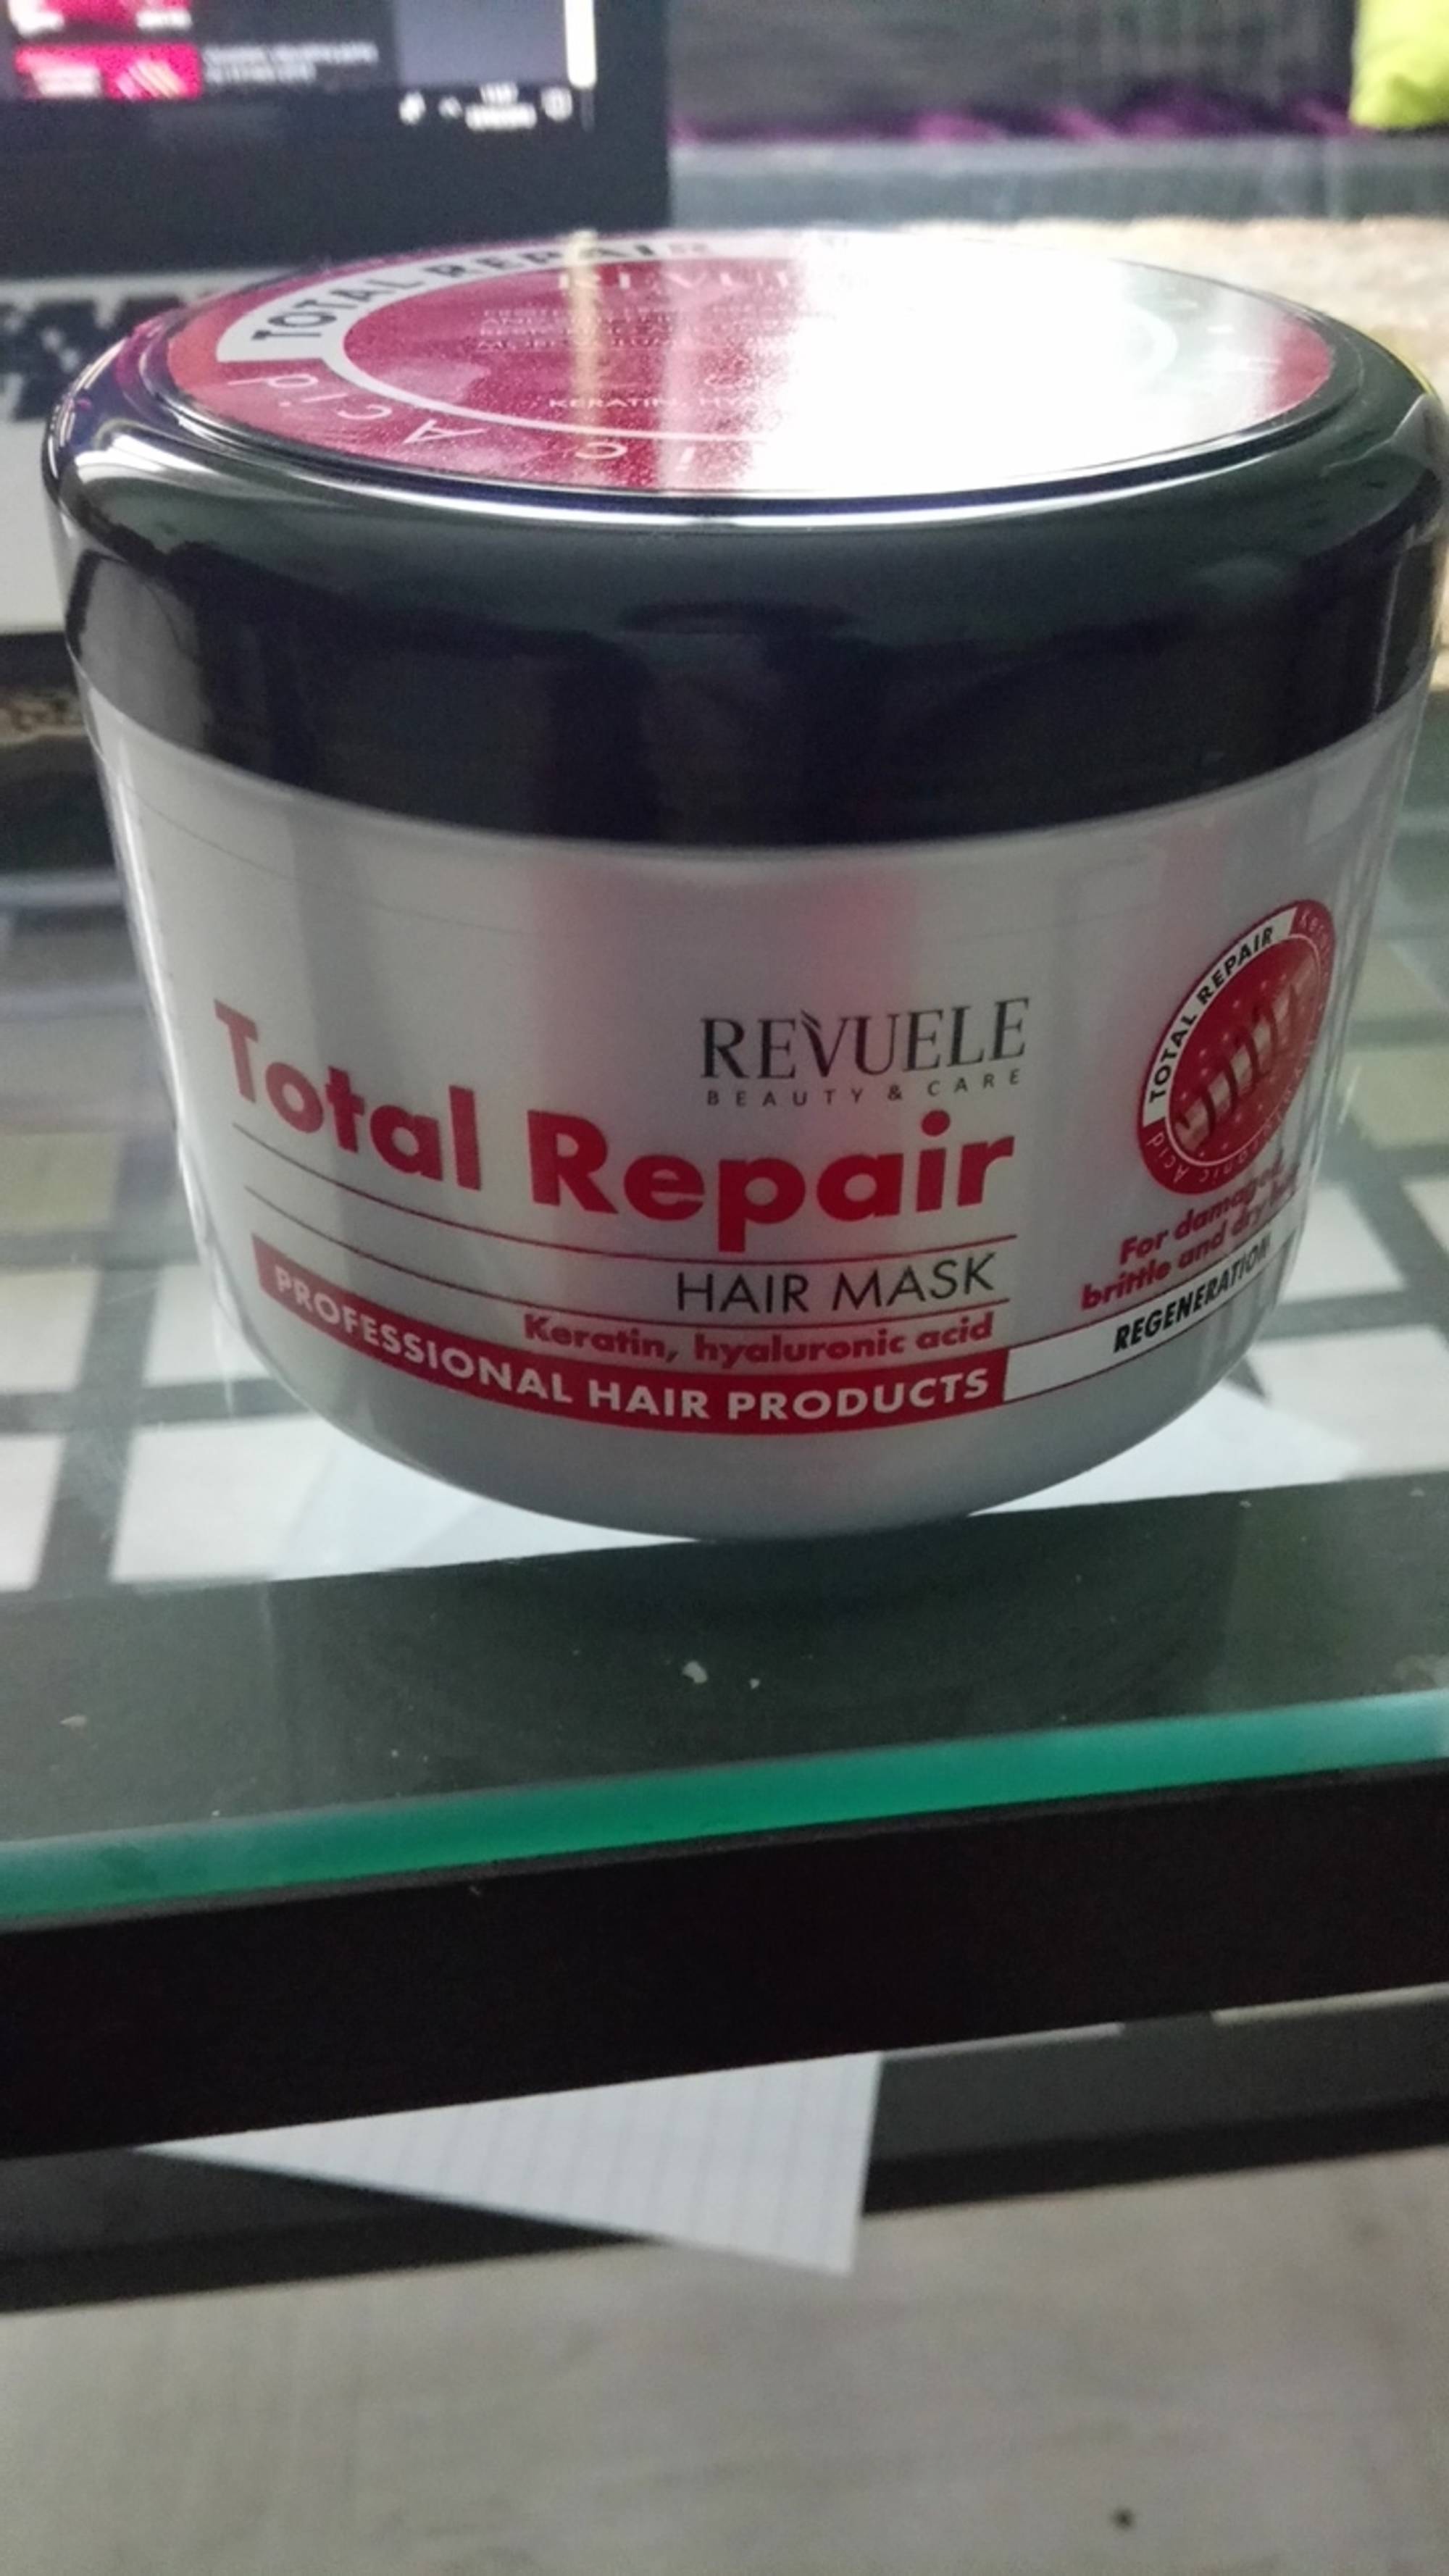 REVUELE - Total repair - Hair mask Keratin, hyaluronic acid